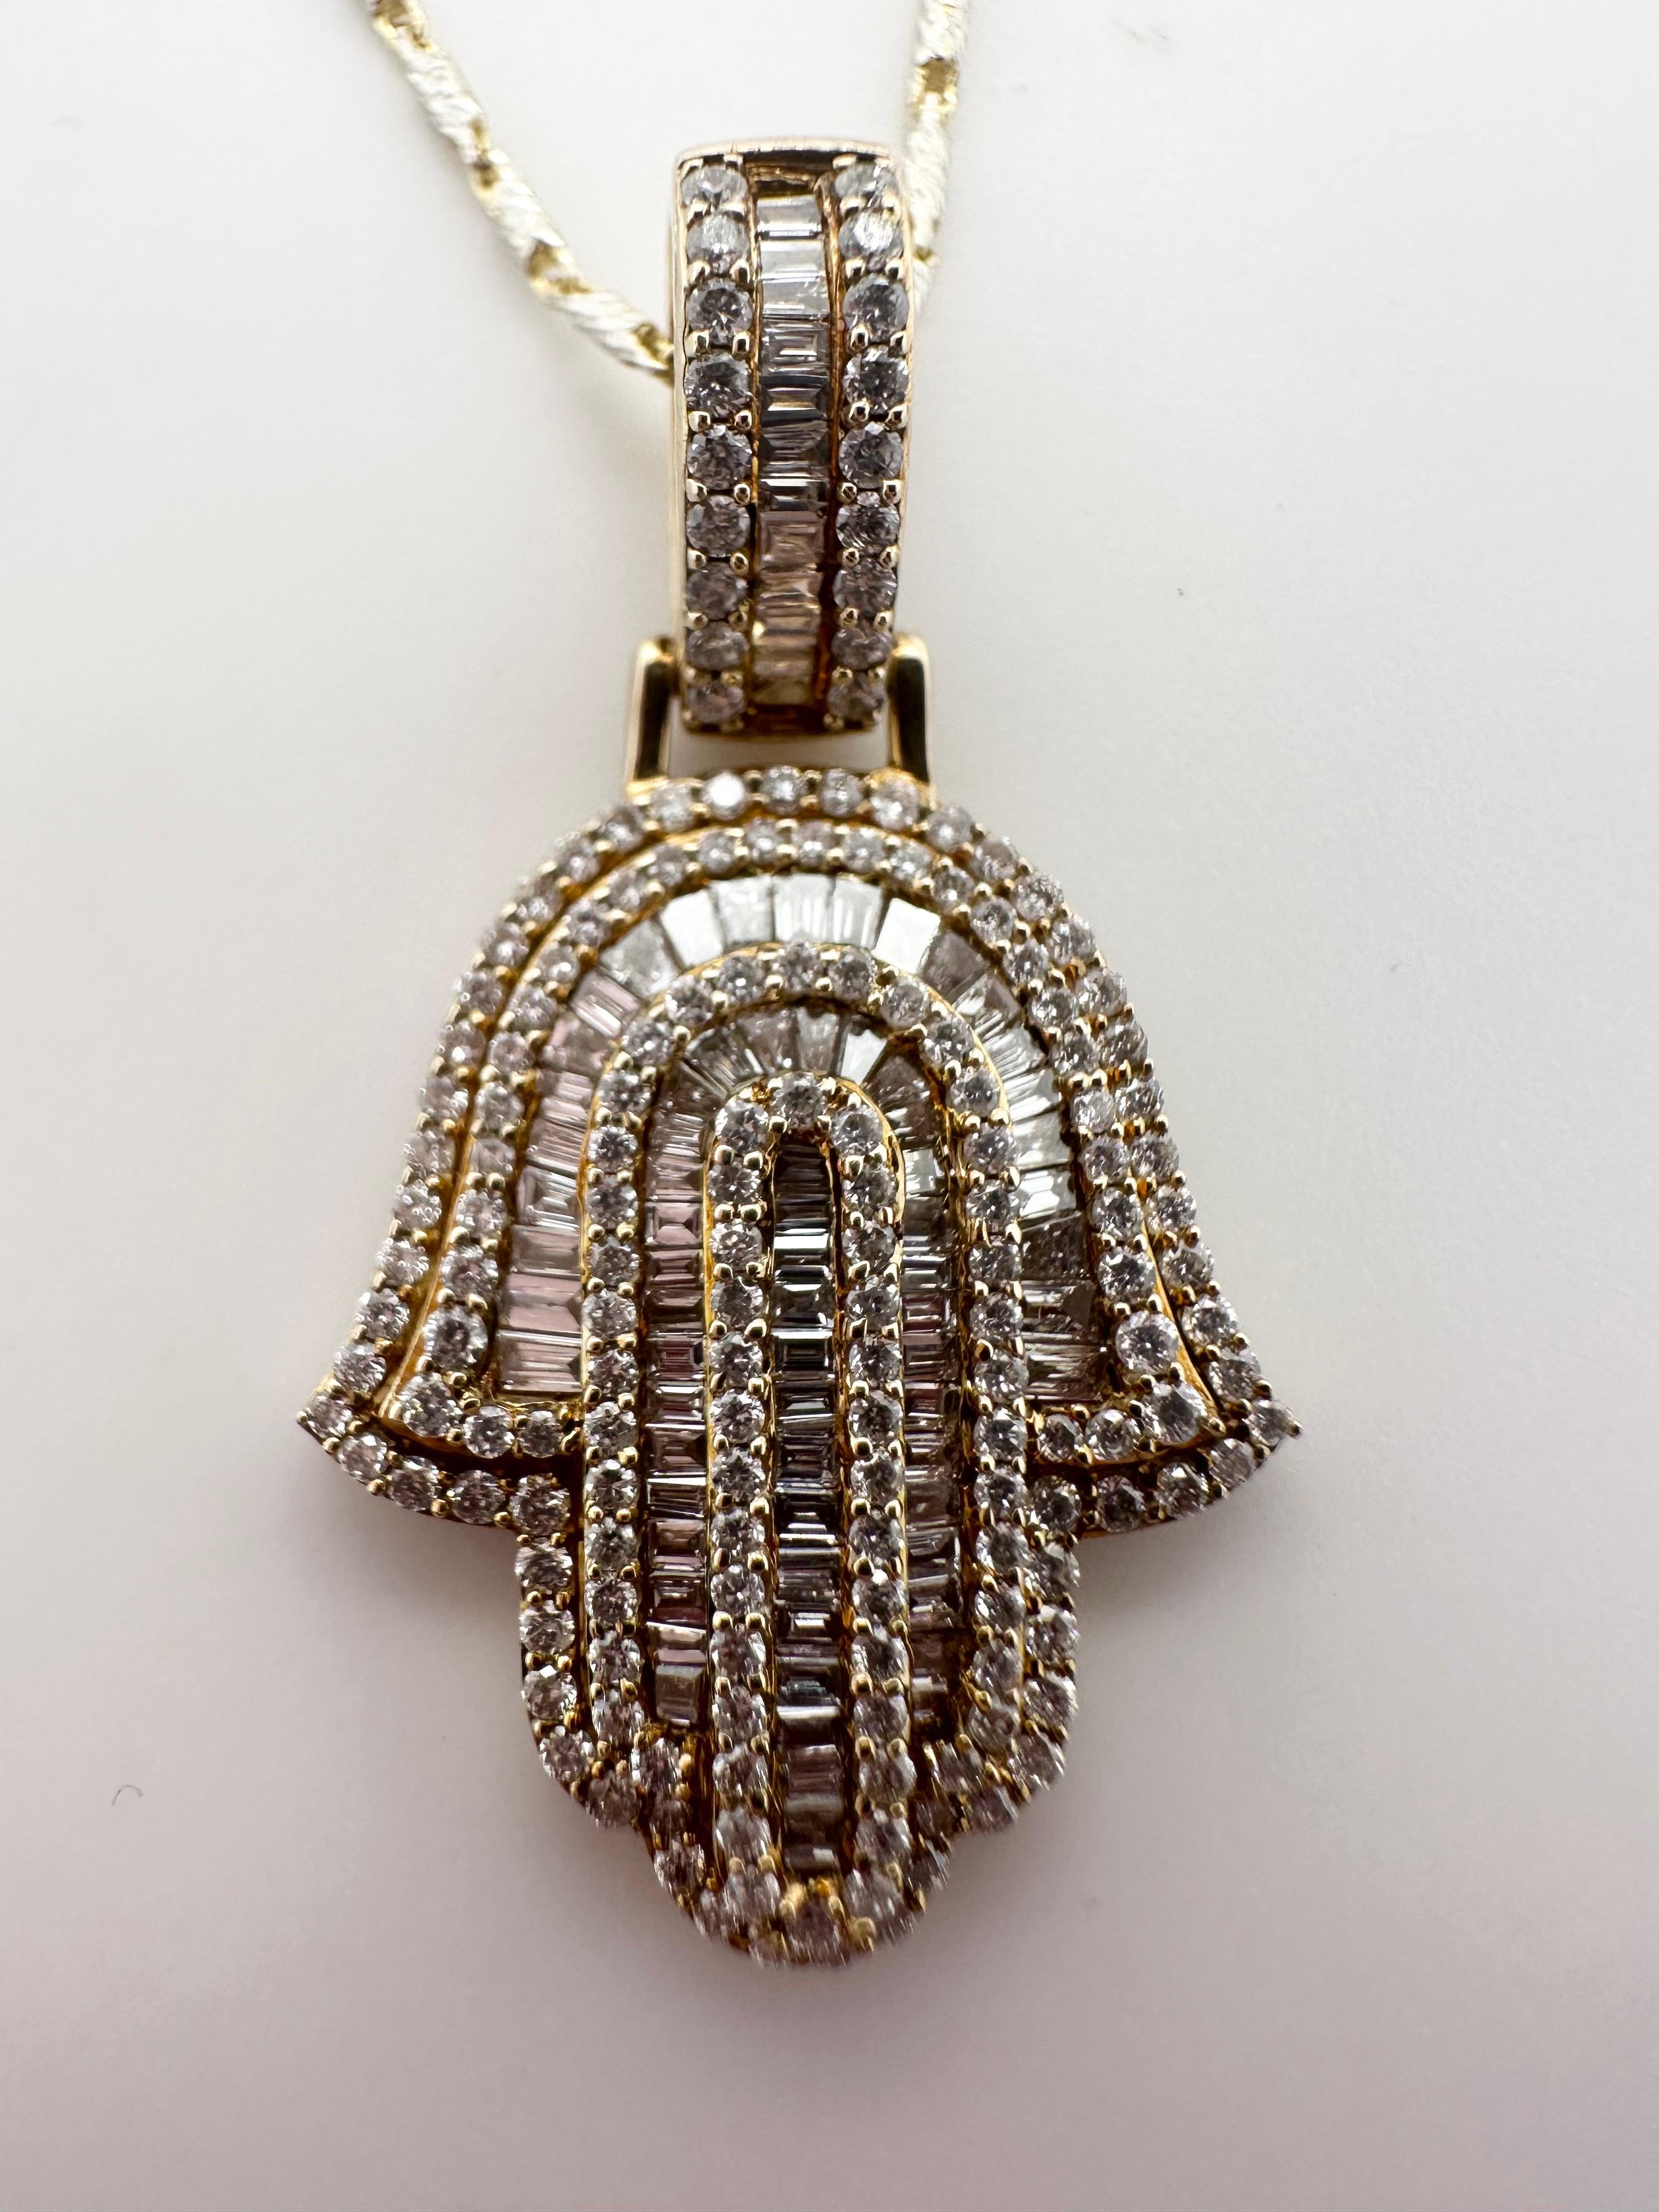 Baguette Cut Hamsa diamond pendant necklace 14KT yellow gold 1.21ct 16